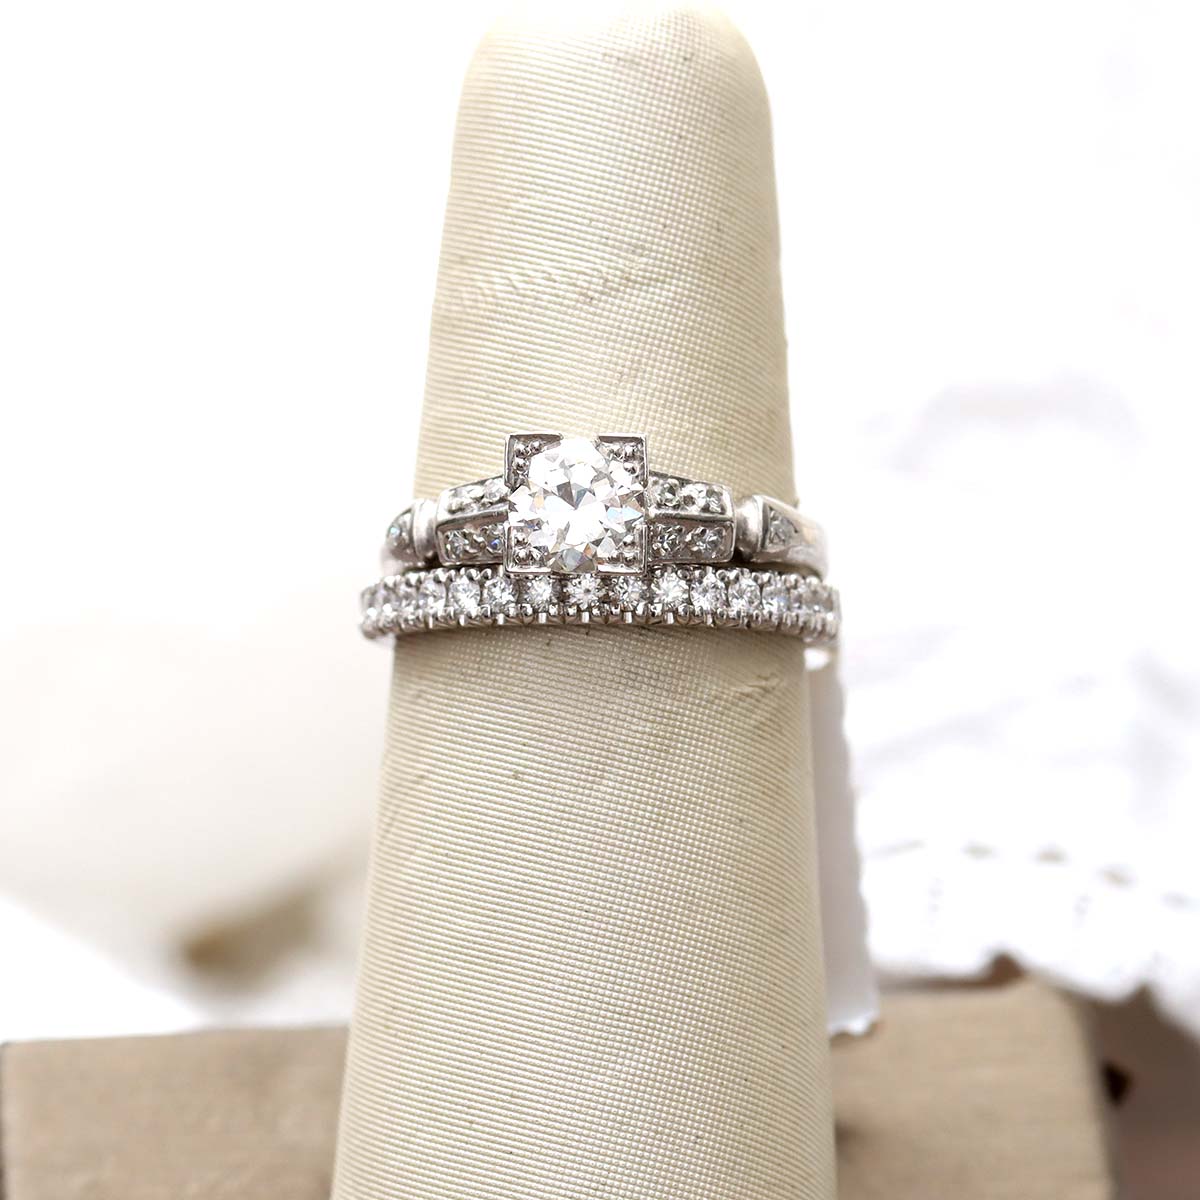 C. 1930s Diamond engagement ring. #VR10414-02 Default Title